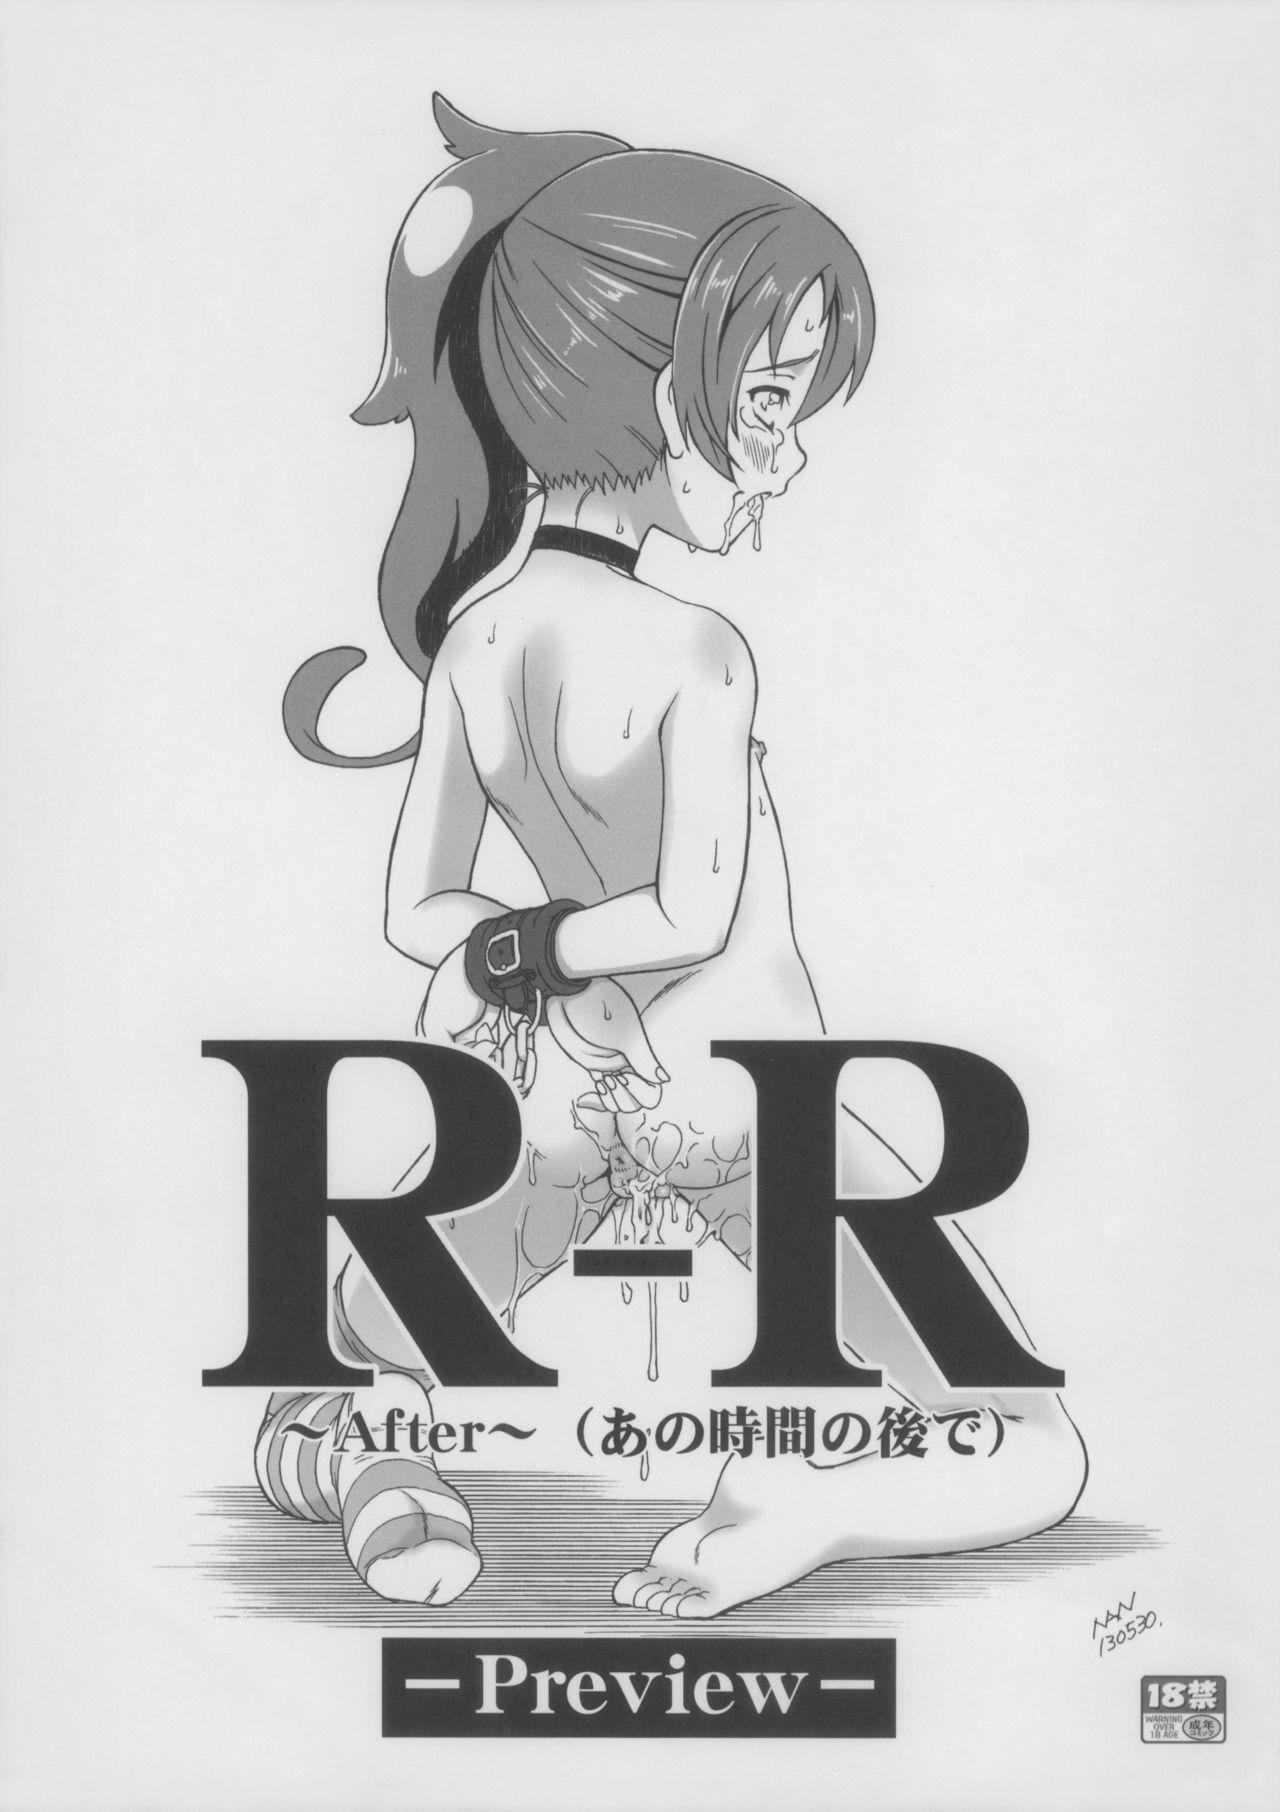 Masterbate (Puniket 27) [Idenshi no Fune (Nanjou Asuka)] R-R ~After~ (Ano Jikan no Ato de) -Preview- (Chousoku Henkei Gyrozetter) - Chousoku henkei gyrozetter Close - Page 1